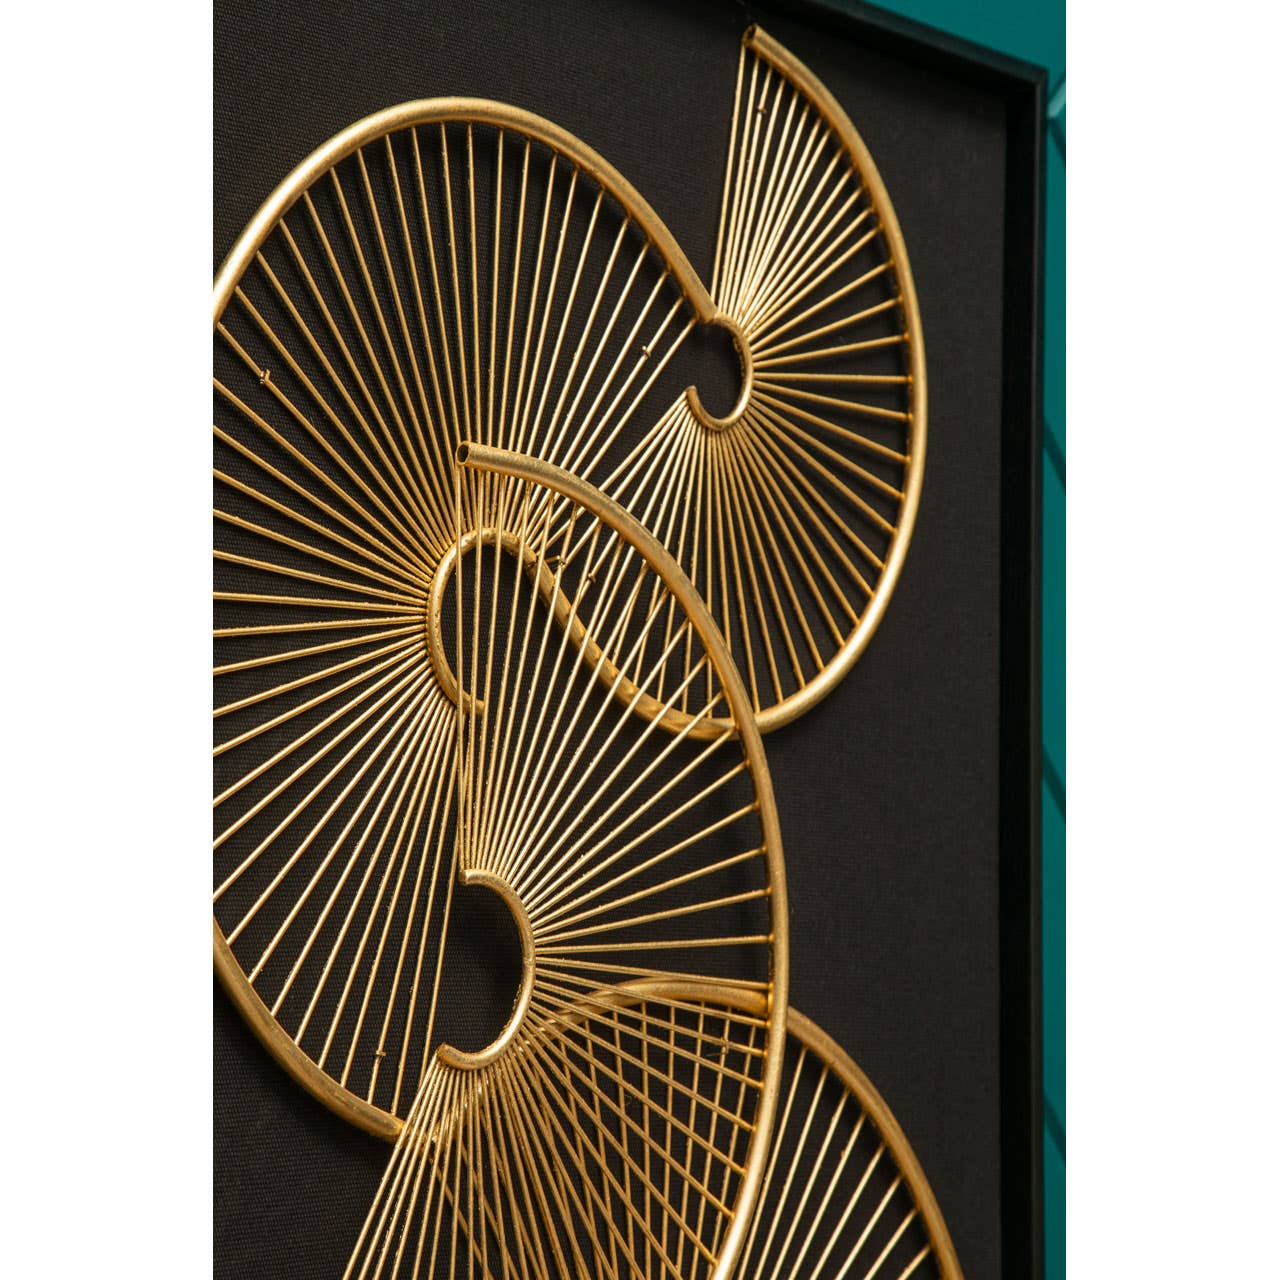 Noosa & Co. Accessories Modello Metal Fan Framed Wall Art House of Isabella UK